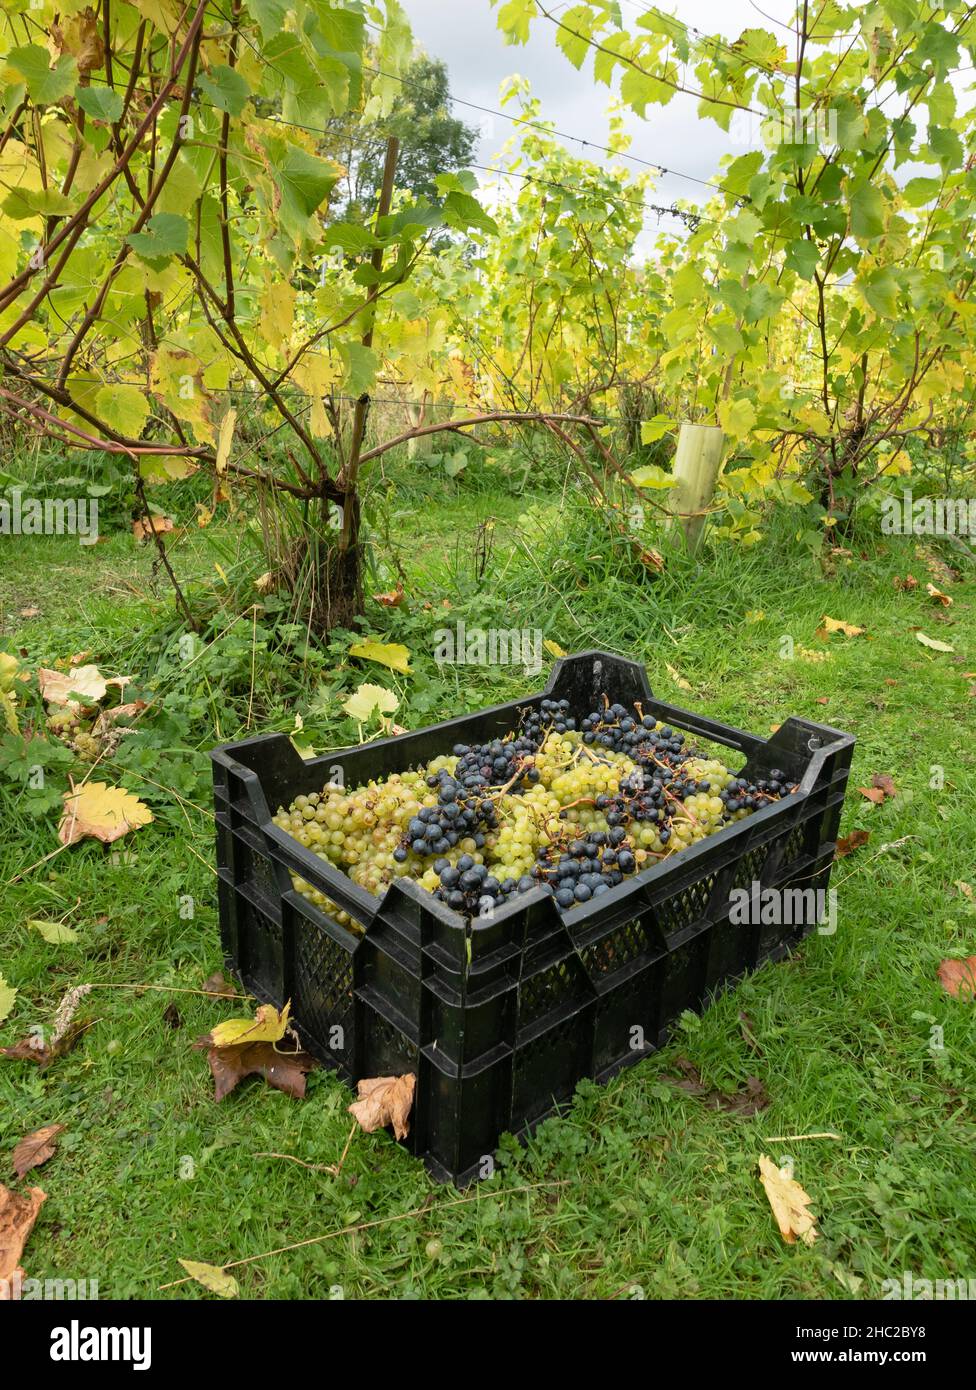 Caisses de raisins pendant la récolte du raisin au vignoble de Renishaw Hall, près de Sheffield, Angleterre, Royaume-Uni. Banque D'Images